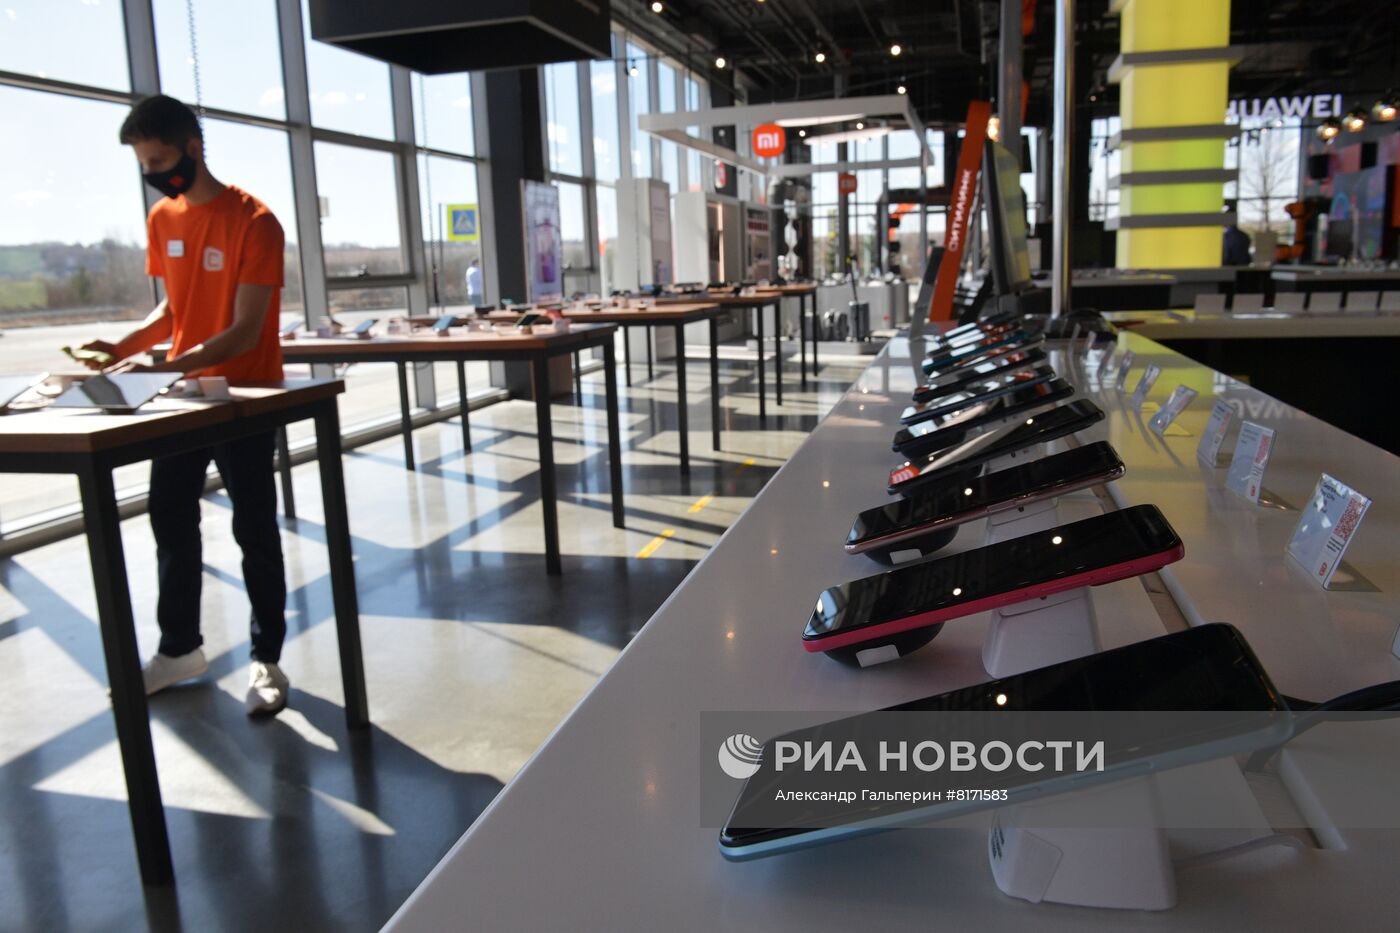 Открытие логистического хаба магазинов "Ситилинк" в Санкт-Петербурге